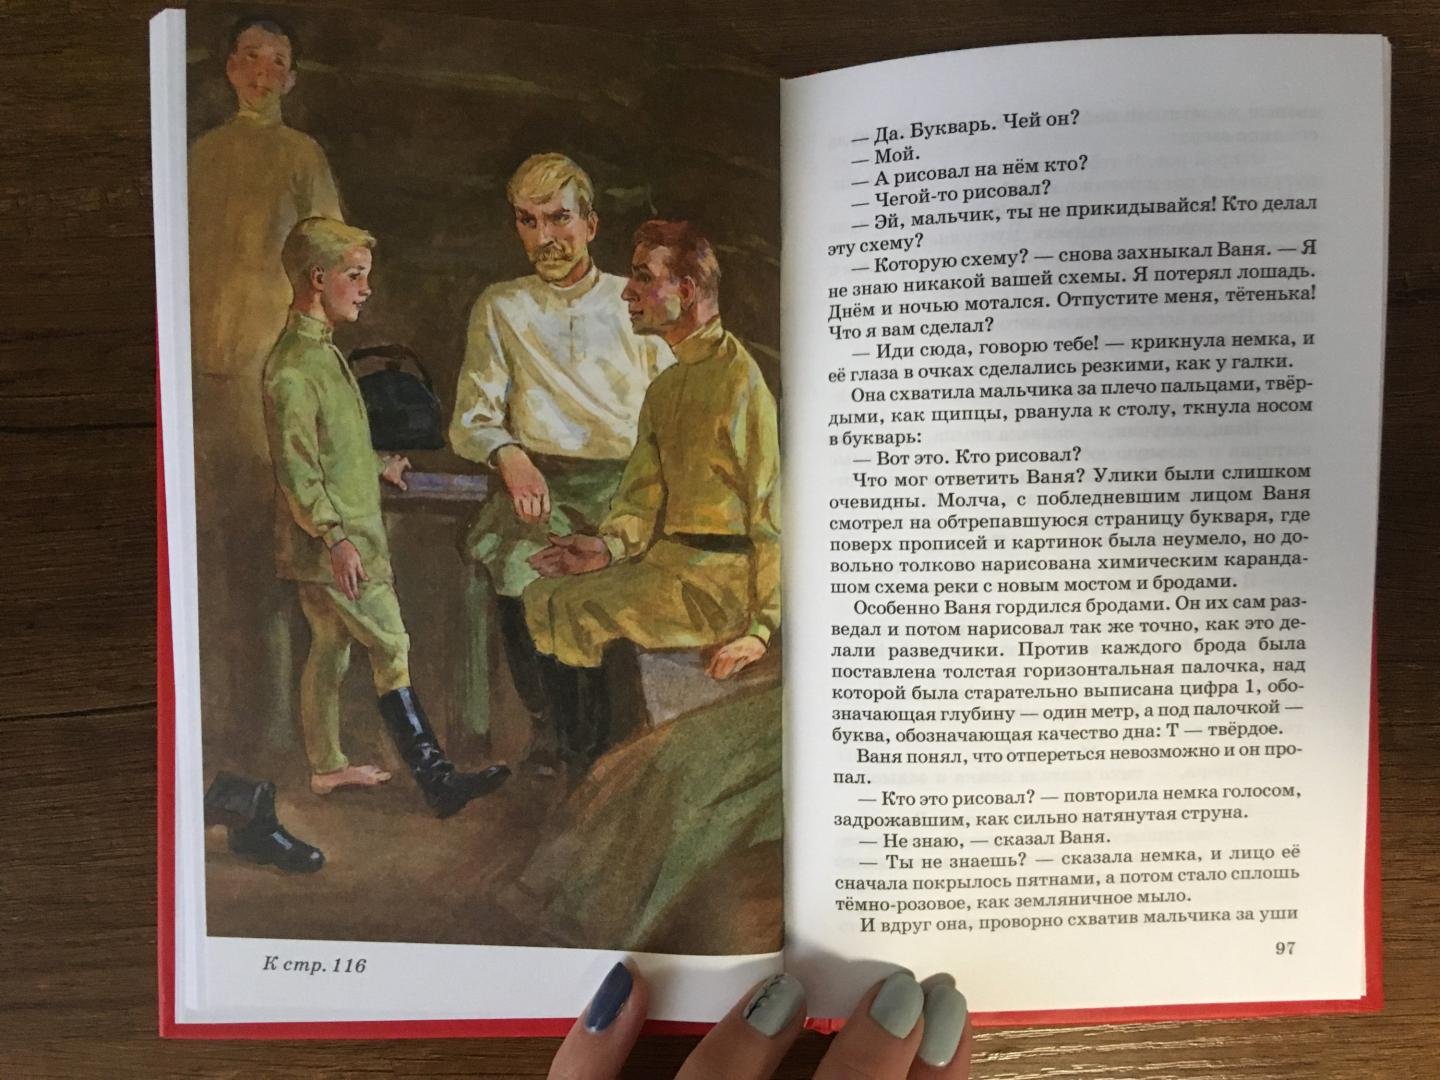 Иллюстрации к книге сын полка Катаев